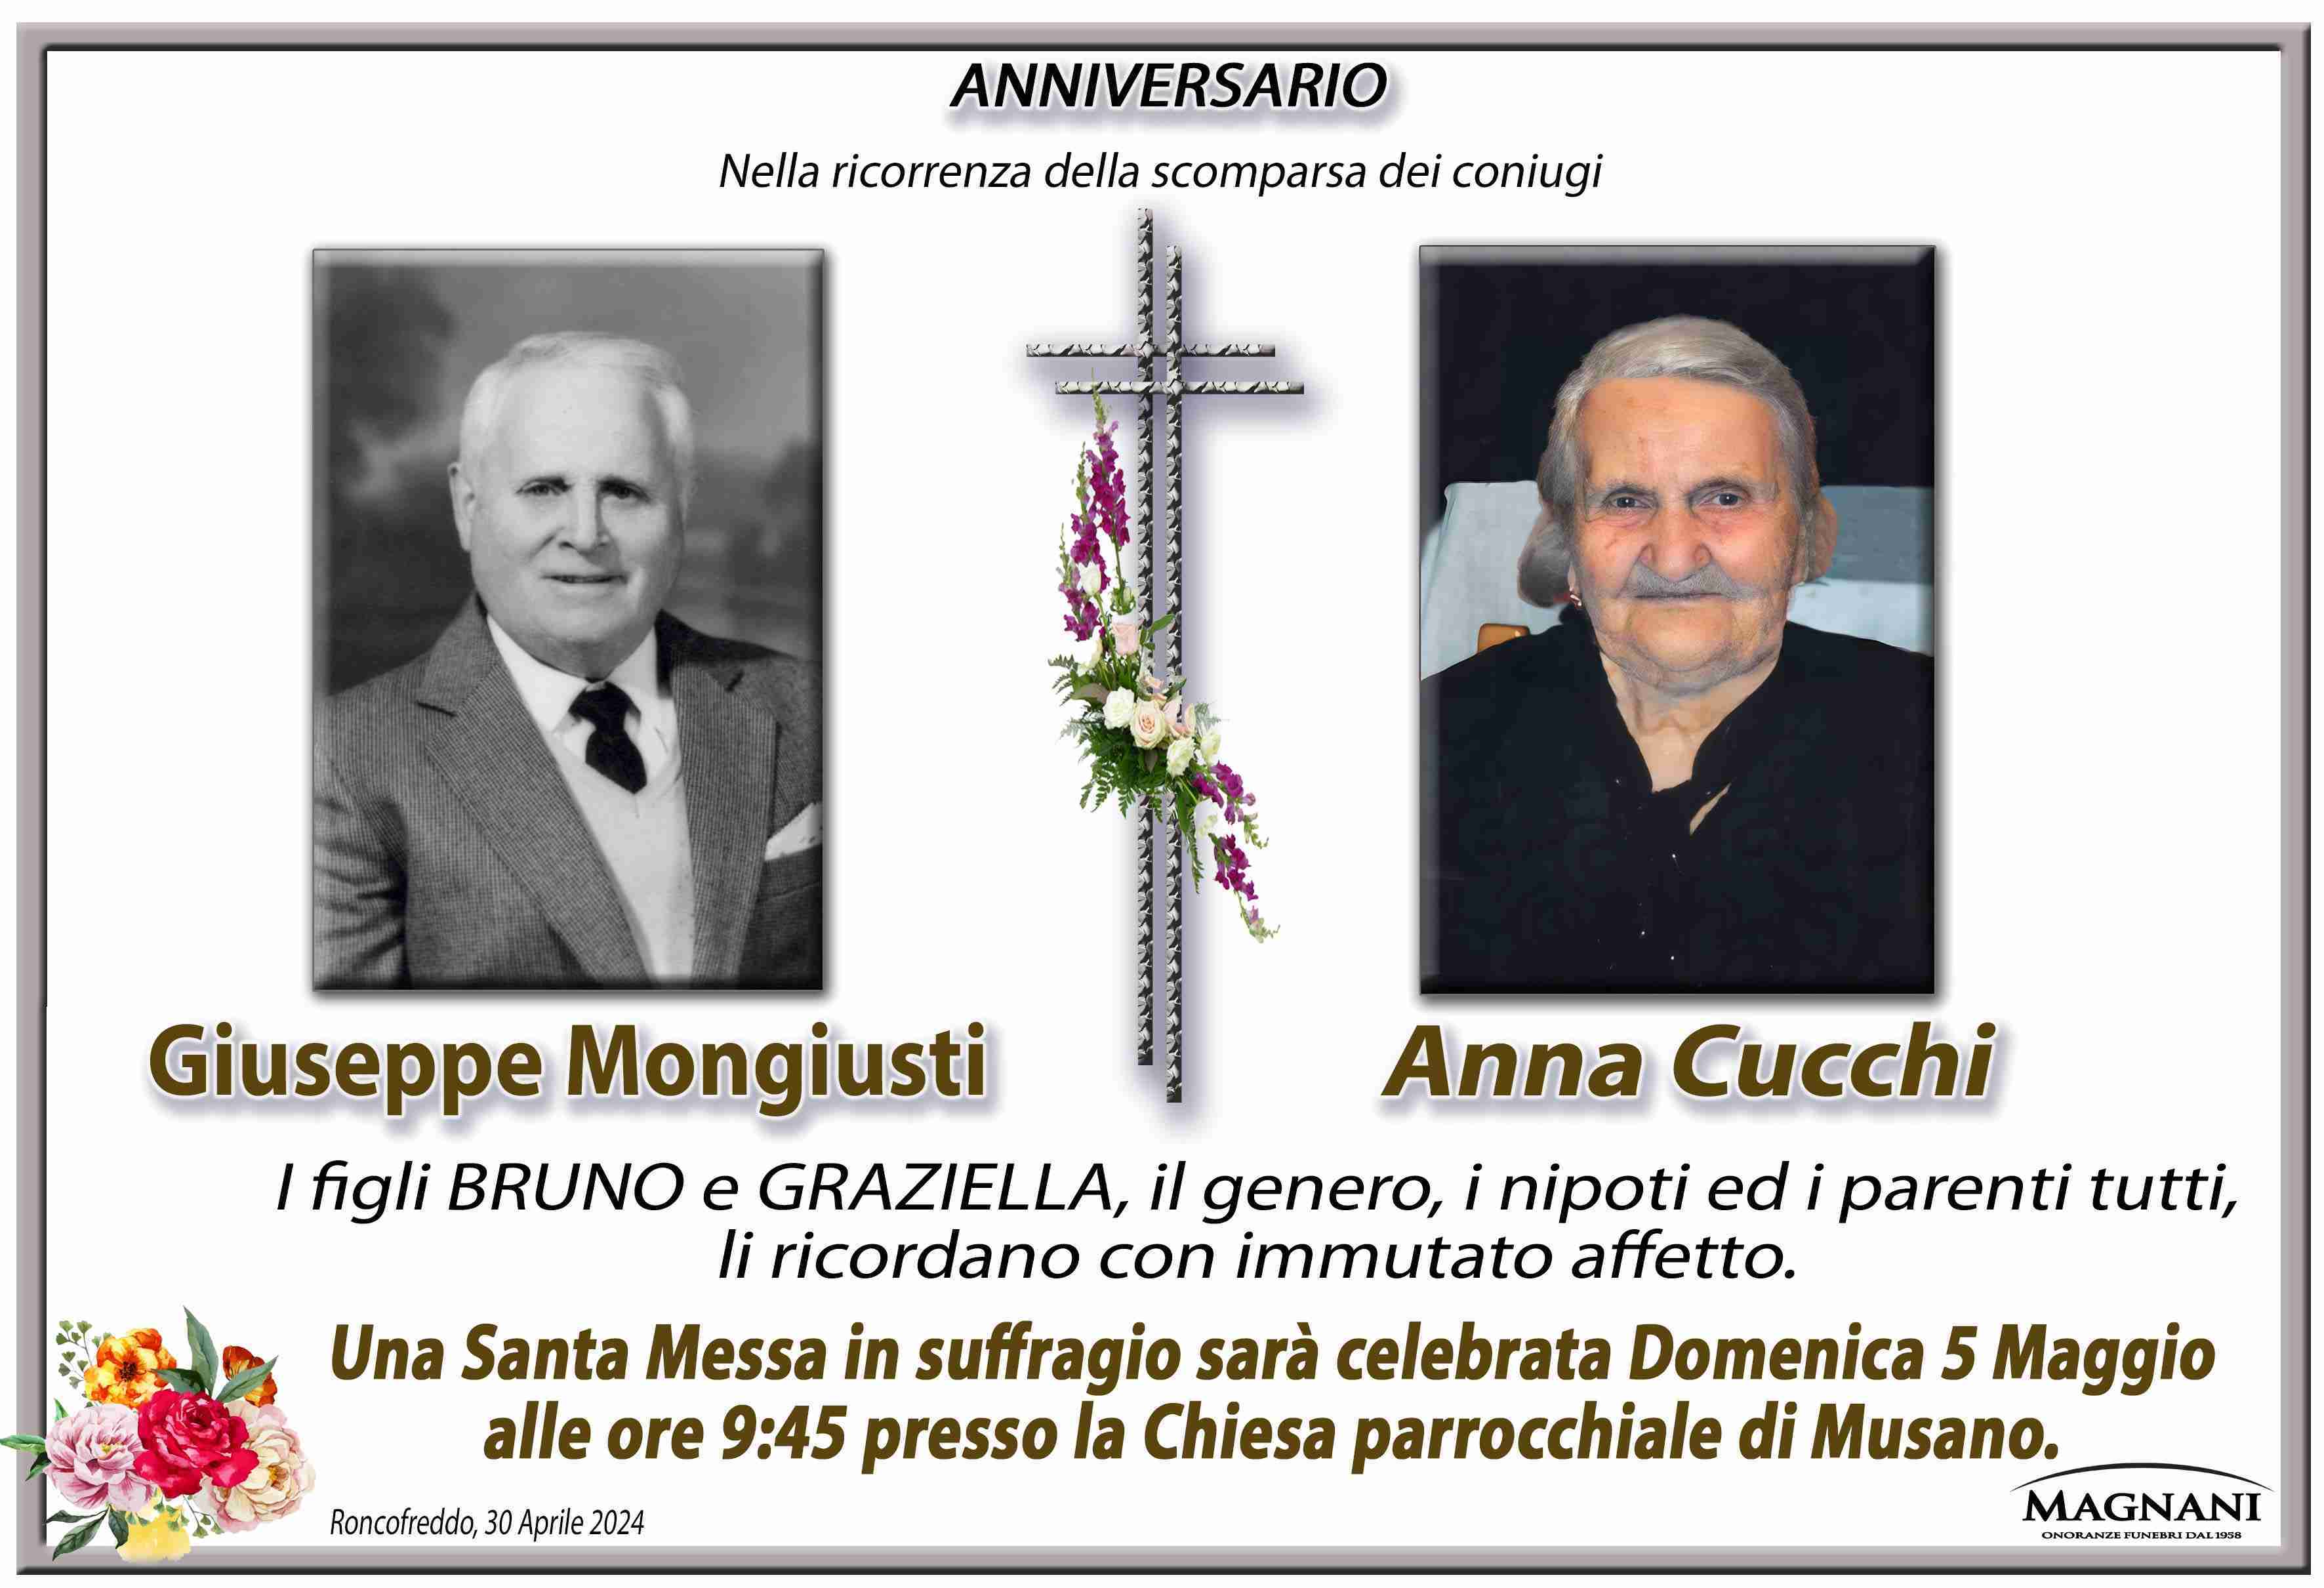 Giuseppe Mongiusti e Anna Cucchi